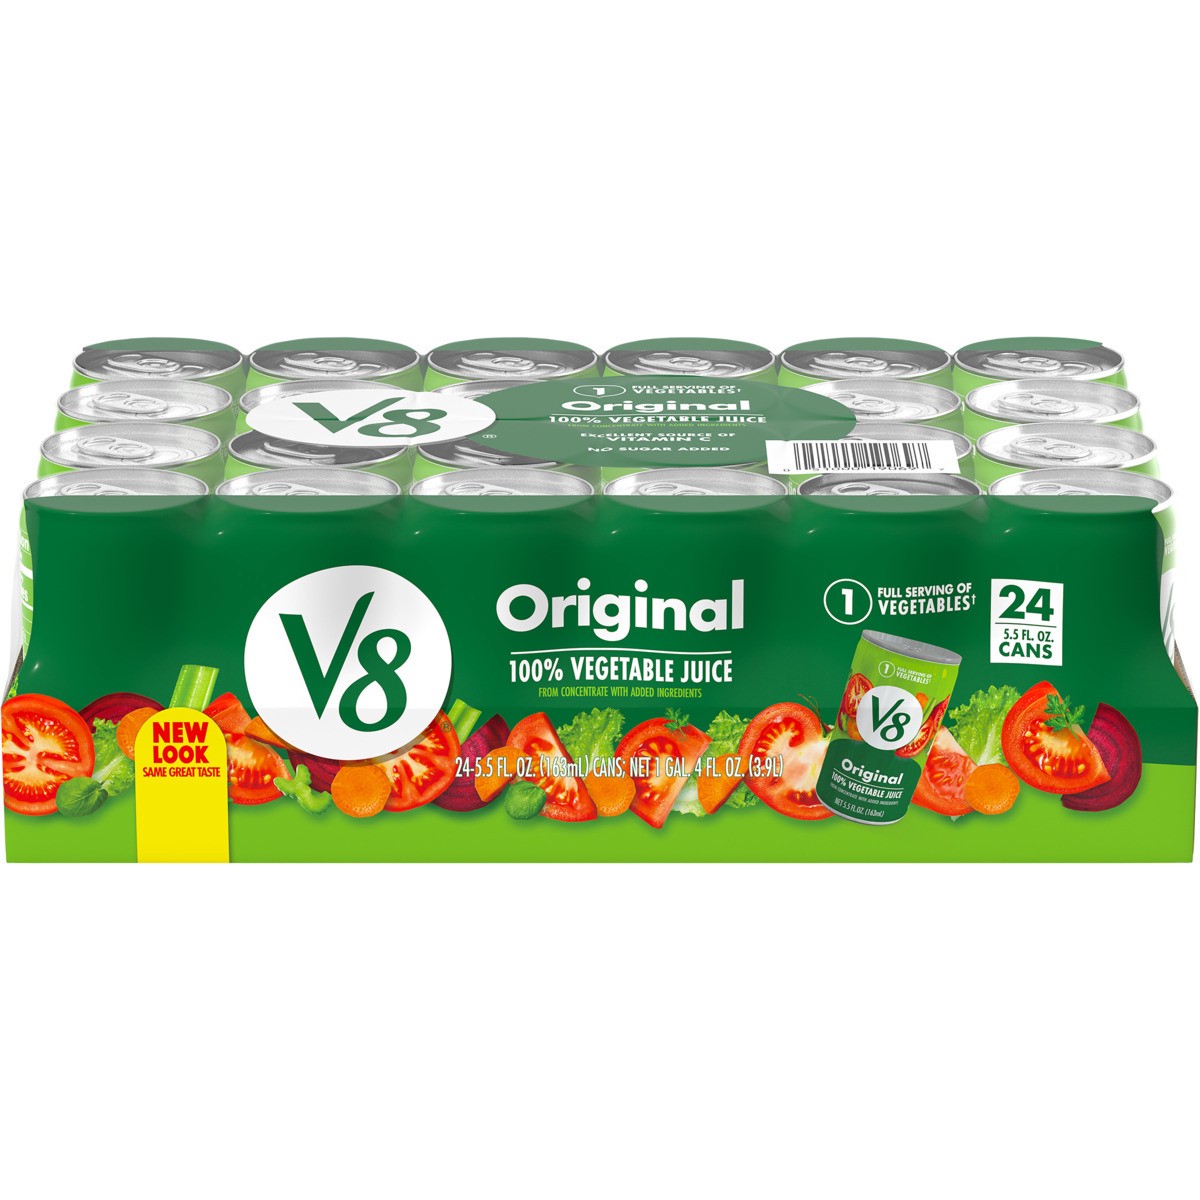 slide 6 of 11, V8 Original 100% Vegetable Juice, 5.5 fl oz Can (24 Pack), 132 oz